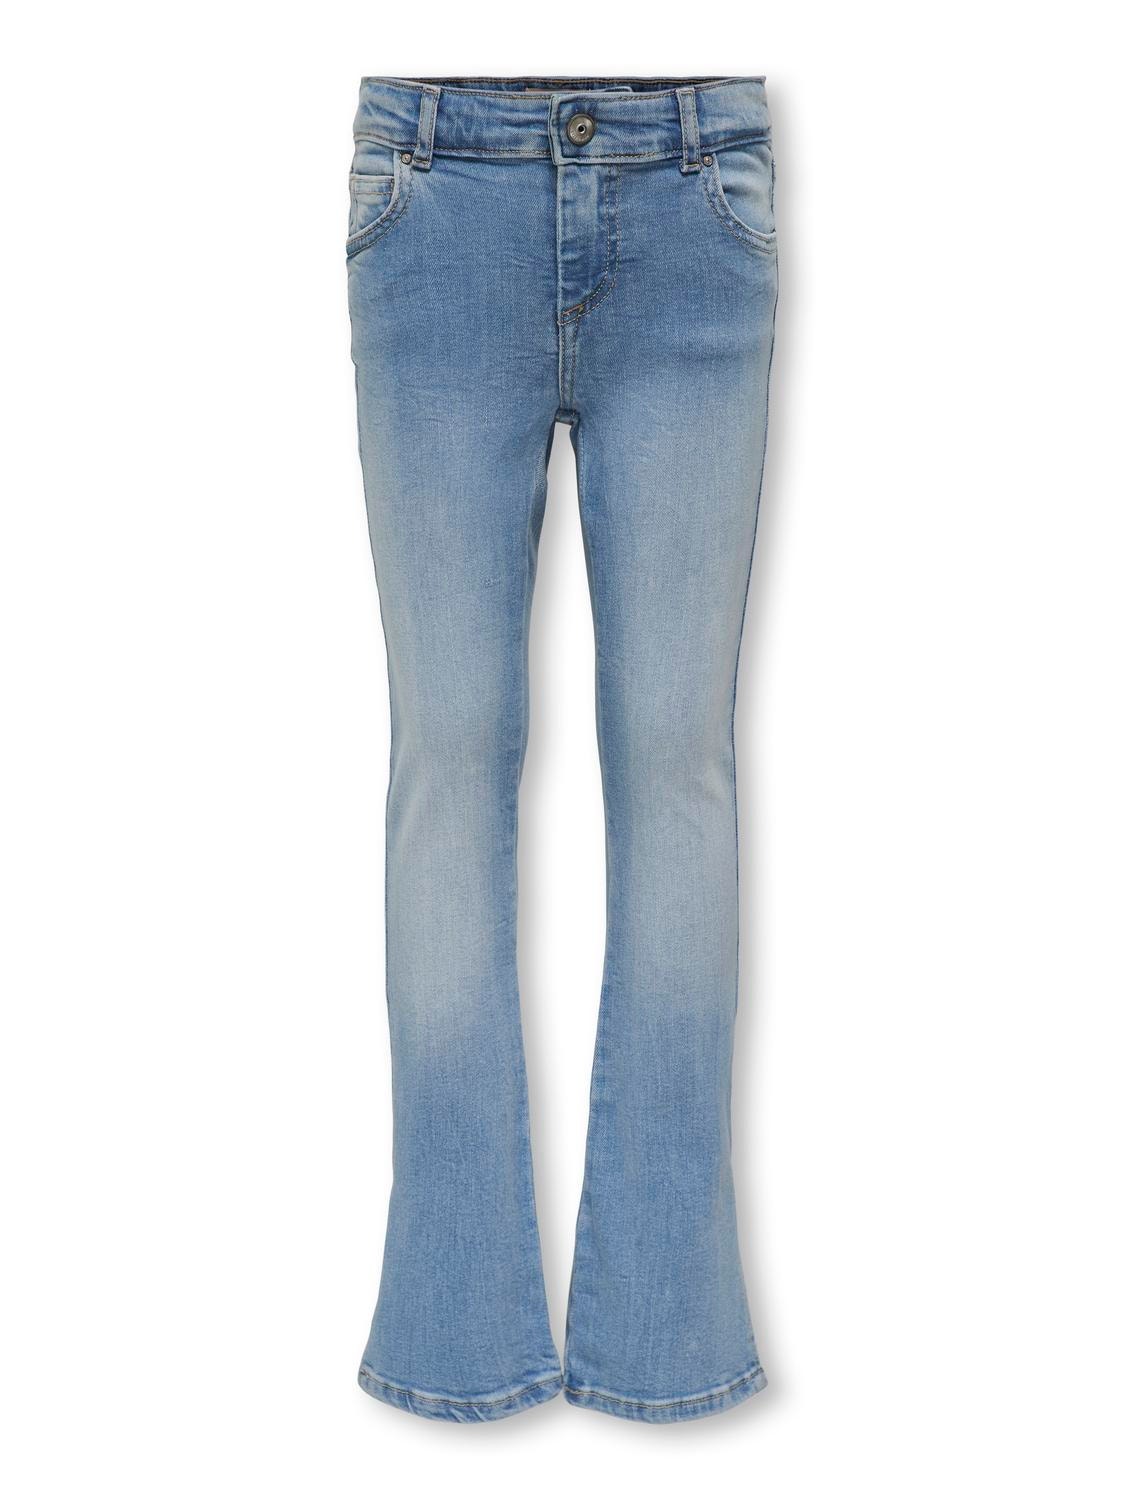 ONLY Flared Fit Side slits Jeans -Light Blue Denim - 15284463